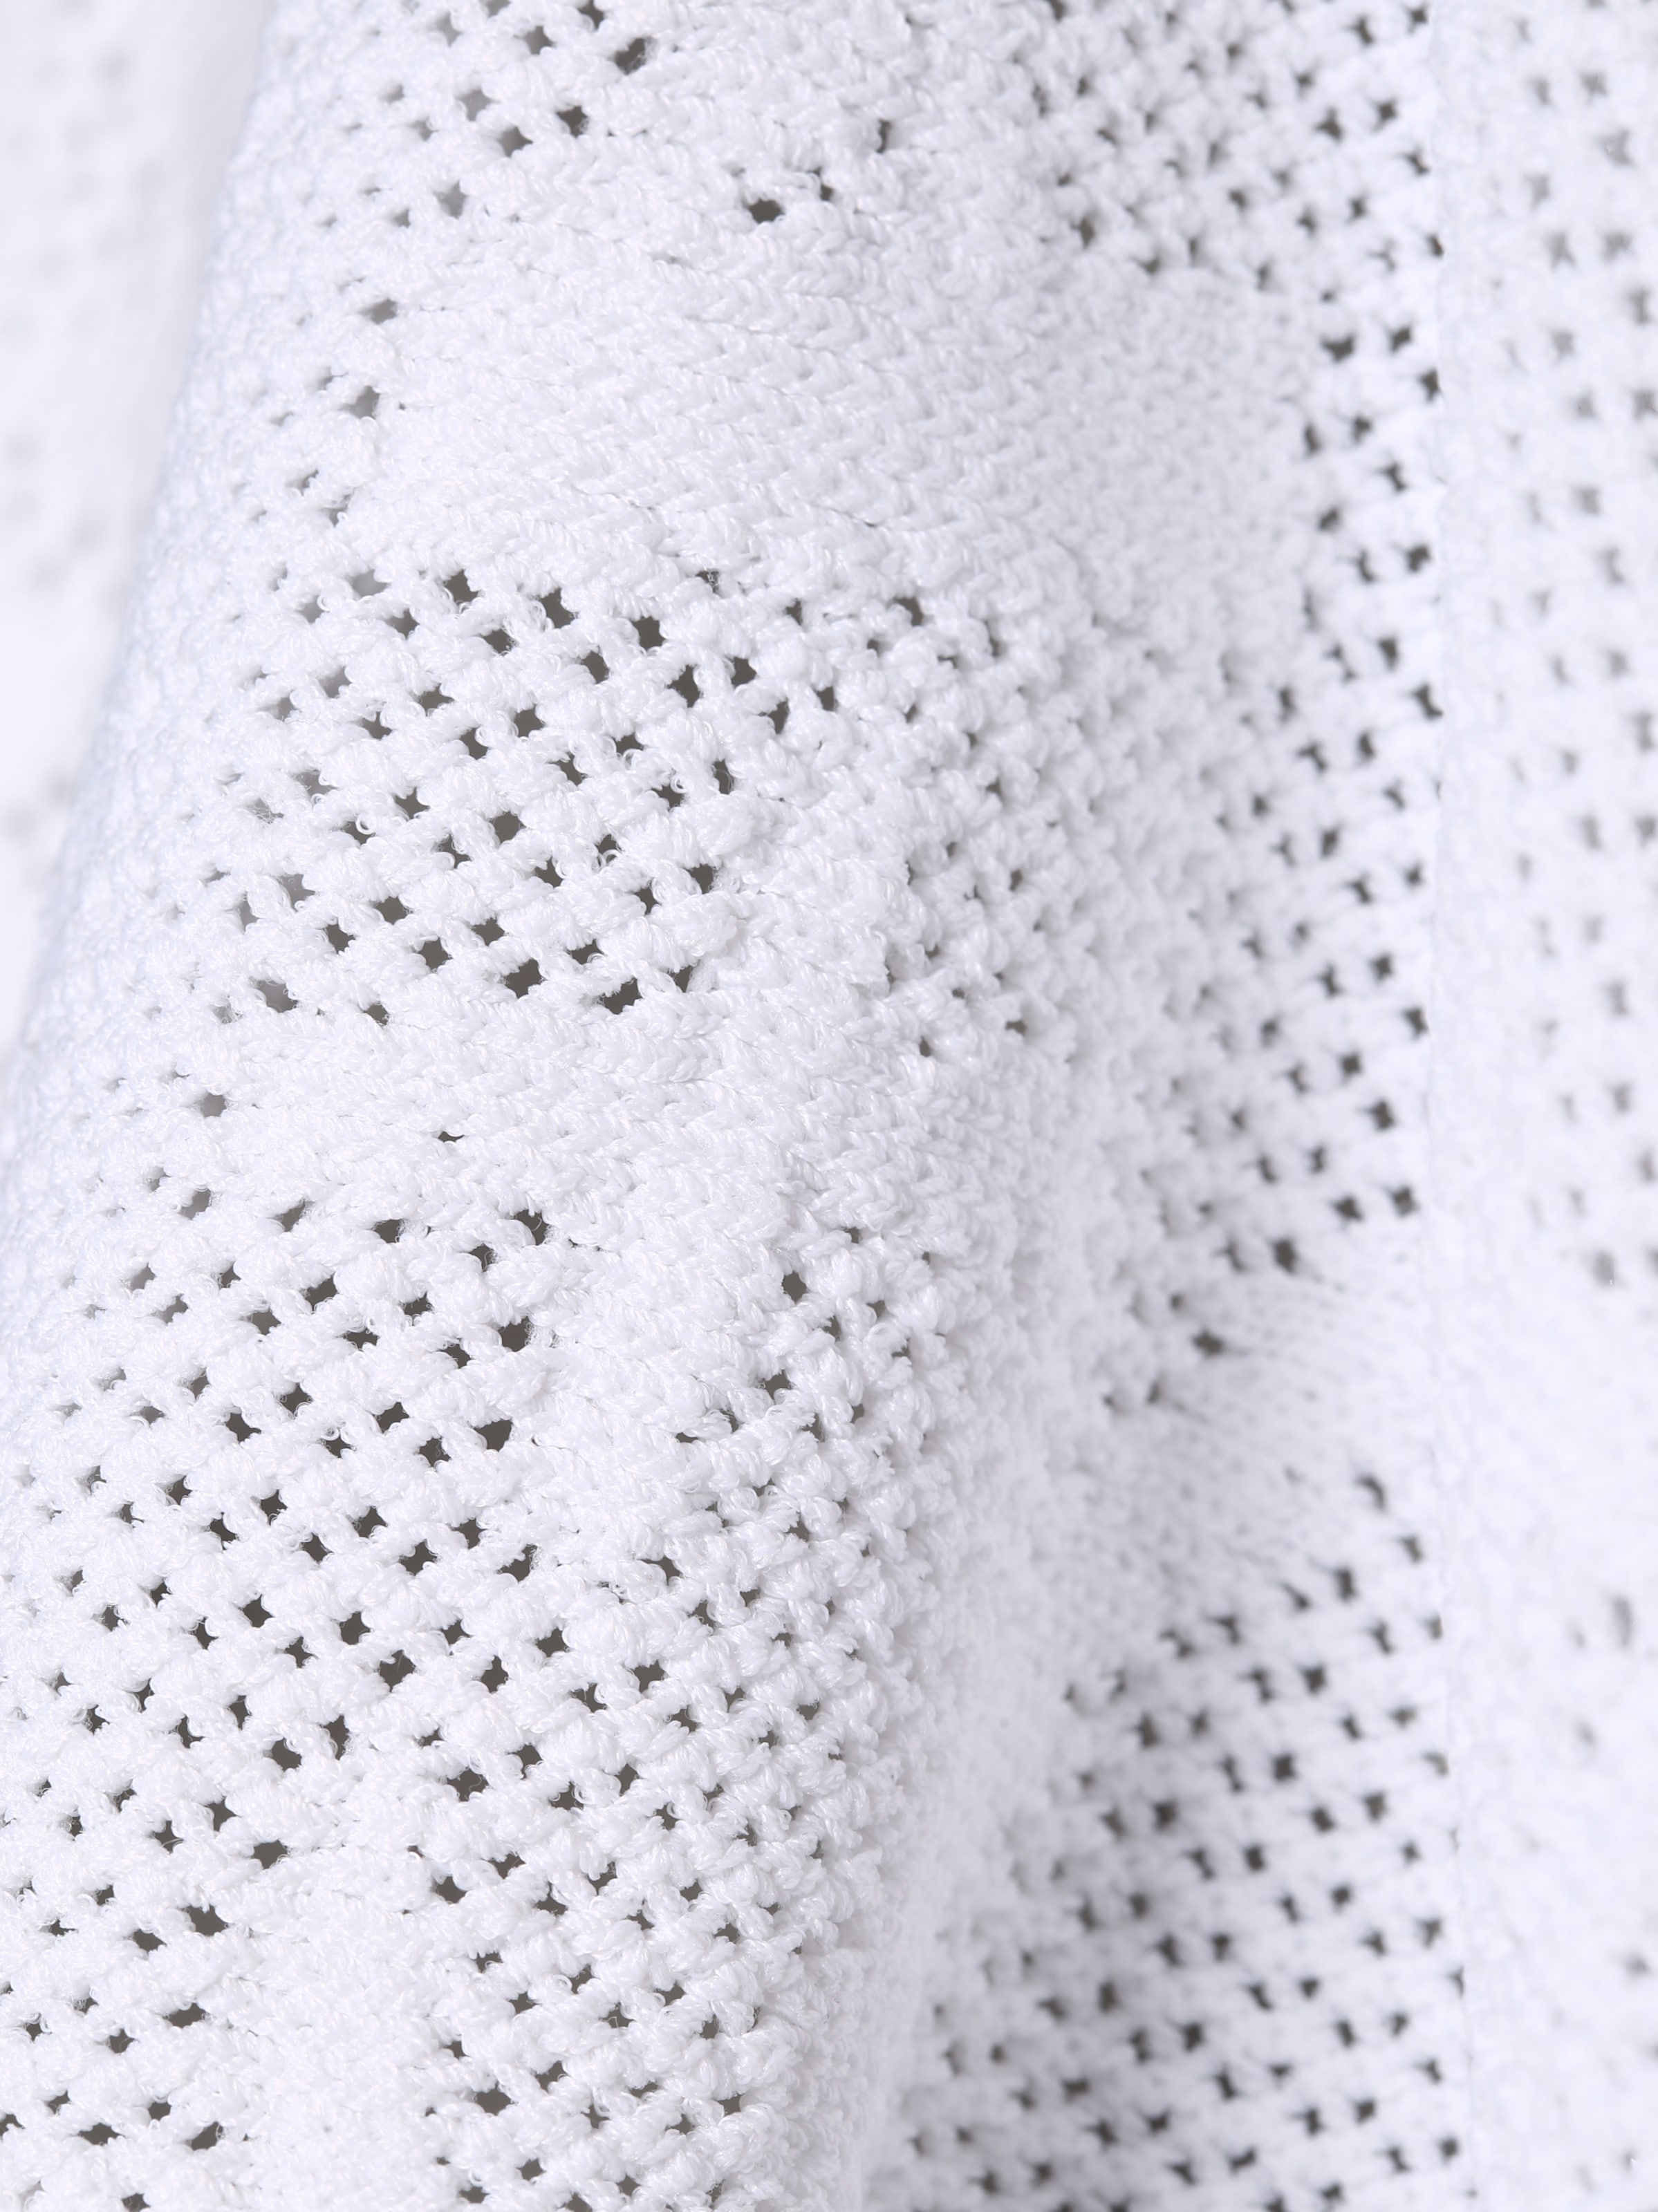 Frauen Sweat ARMANI EXCHANGE Sweatshirt in Weiß - ZB60572